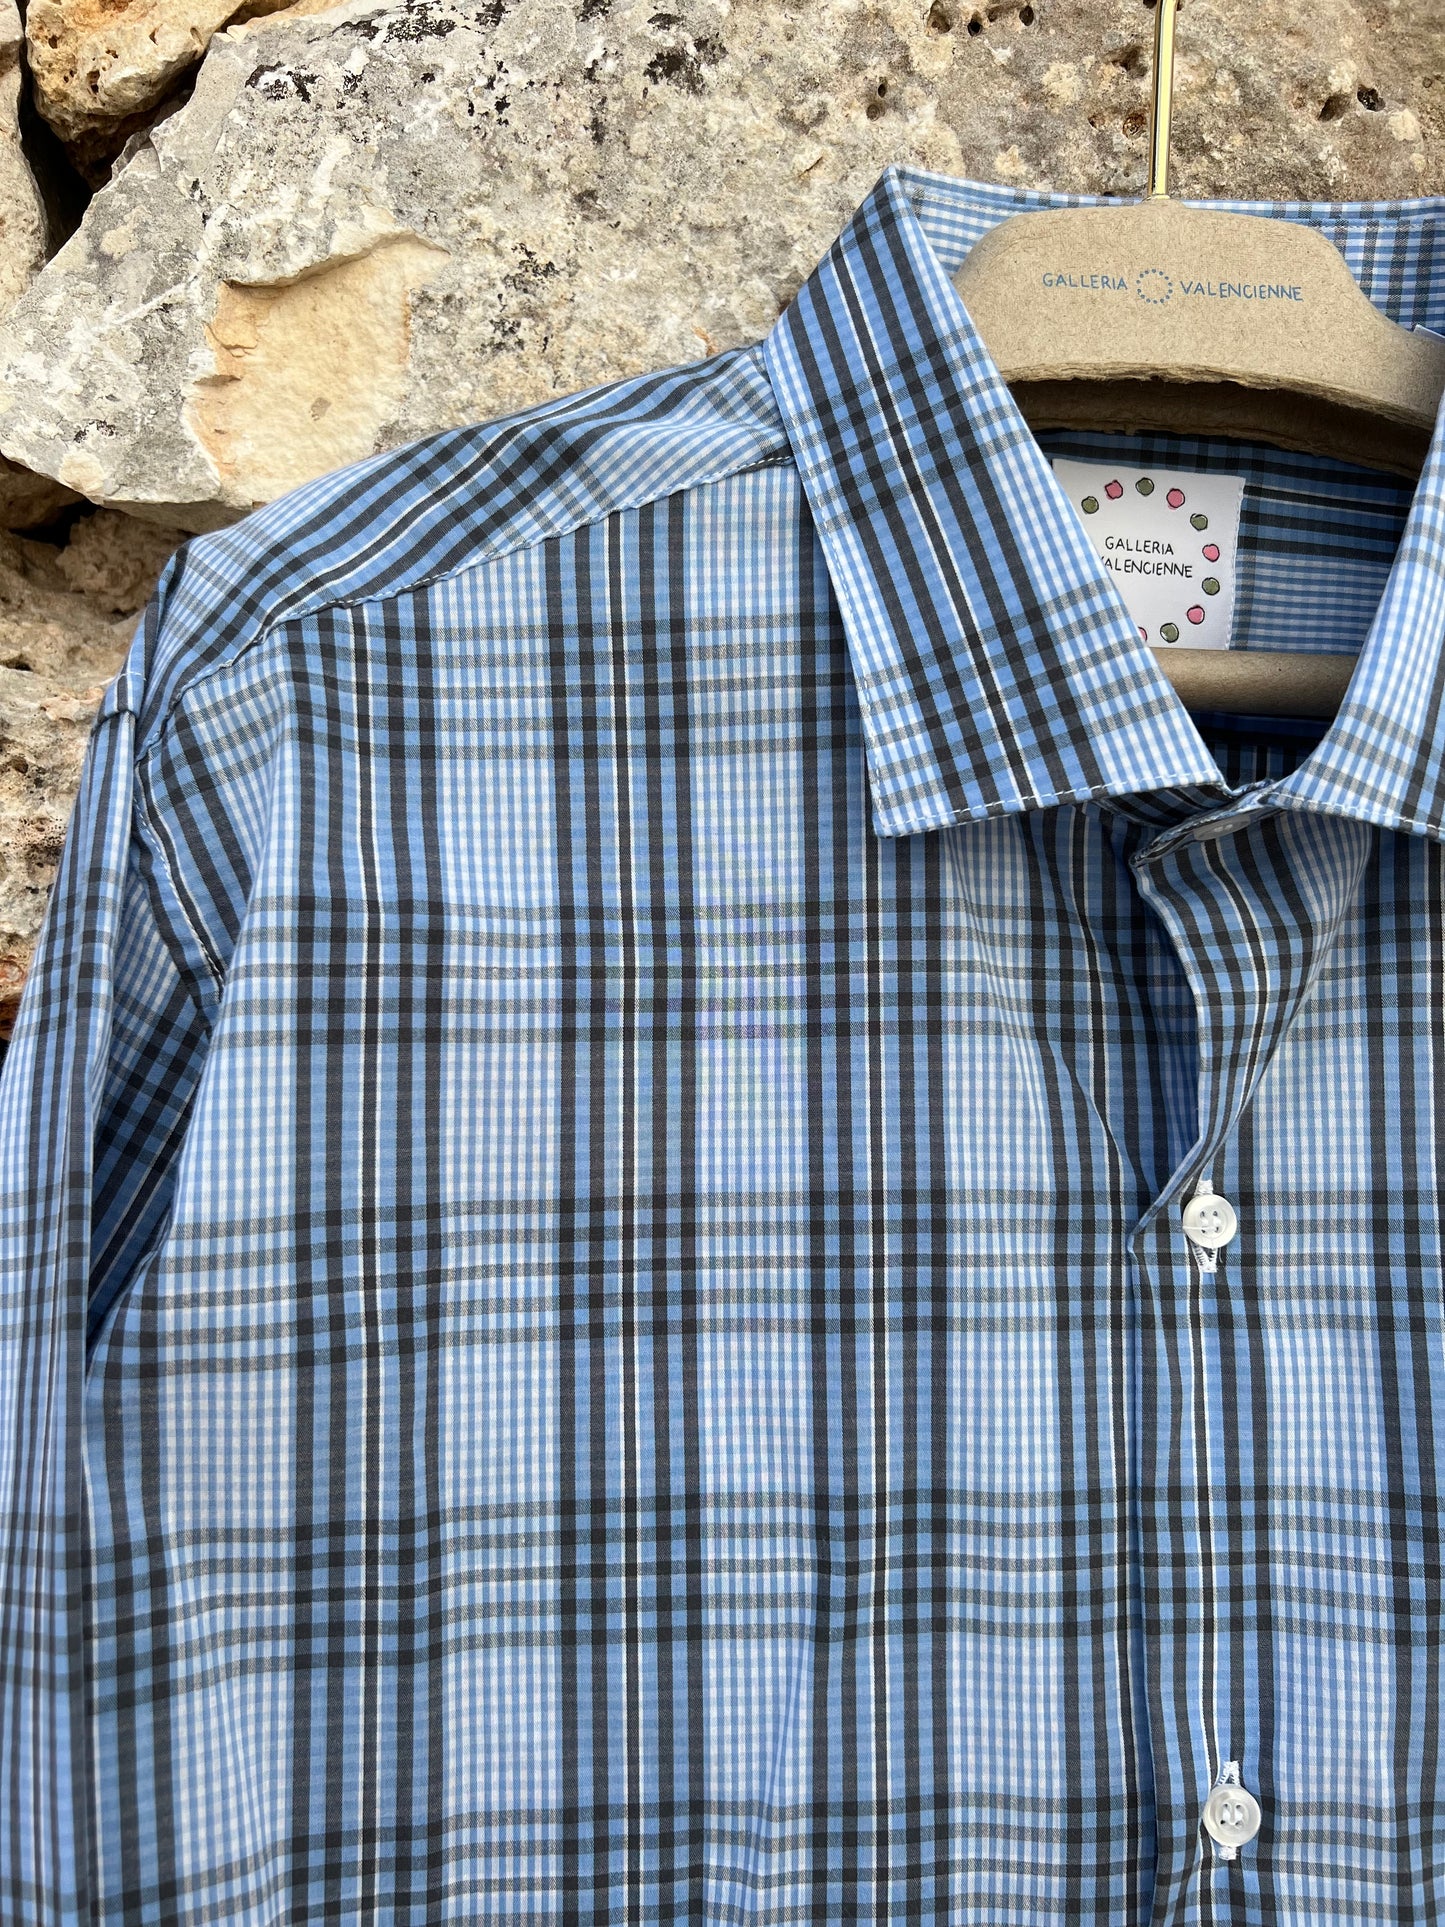 Shirt Men - Classic Madras Blue